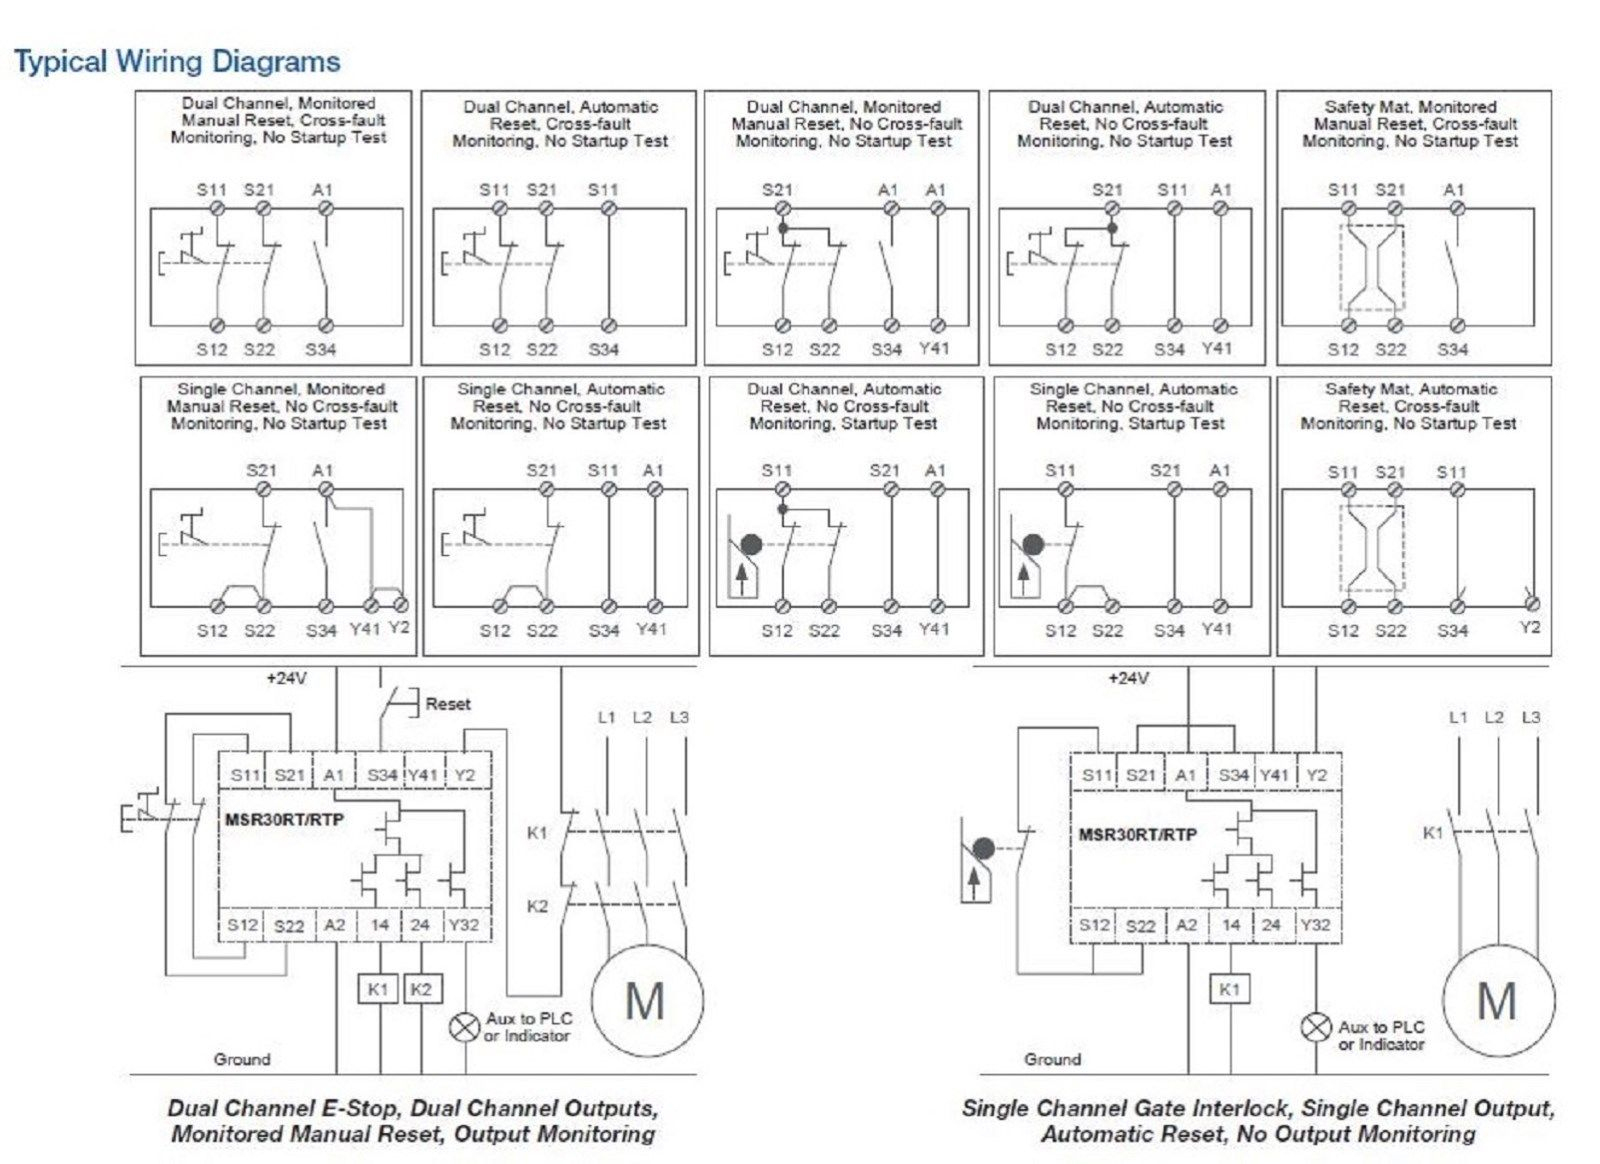 Allen Bradley Safety Relay Wiring Diagram - Wiring Diagram